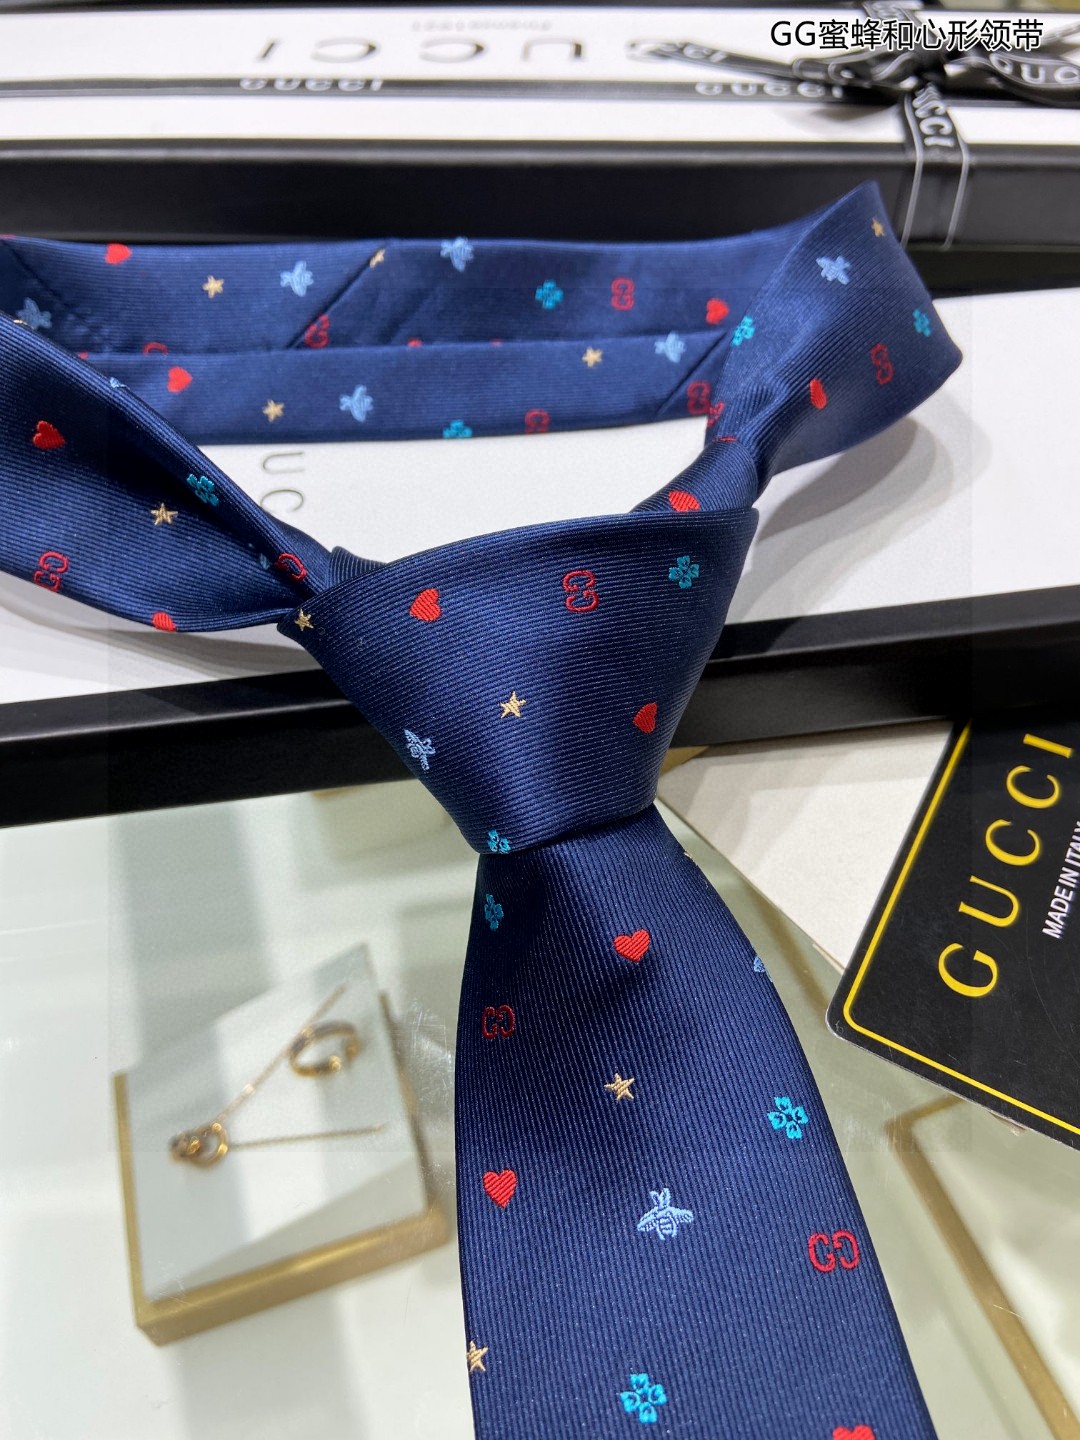 特价G家男士领带系列GG蜜蜂和心形领带稀有采用经典主题动物绣花展现精湛手工与时尚优雅的理想选择这款领带将